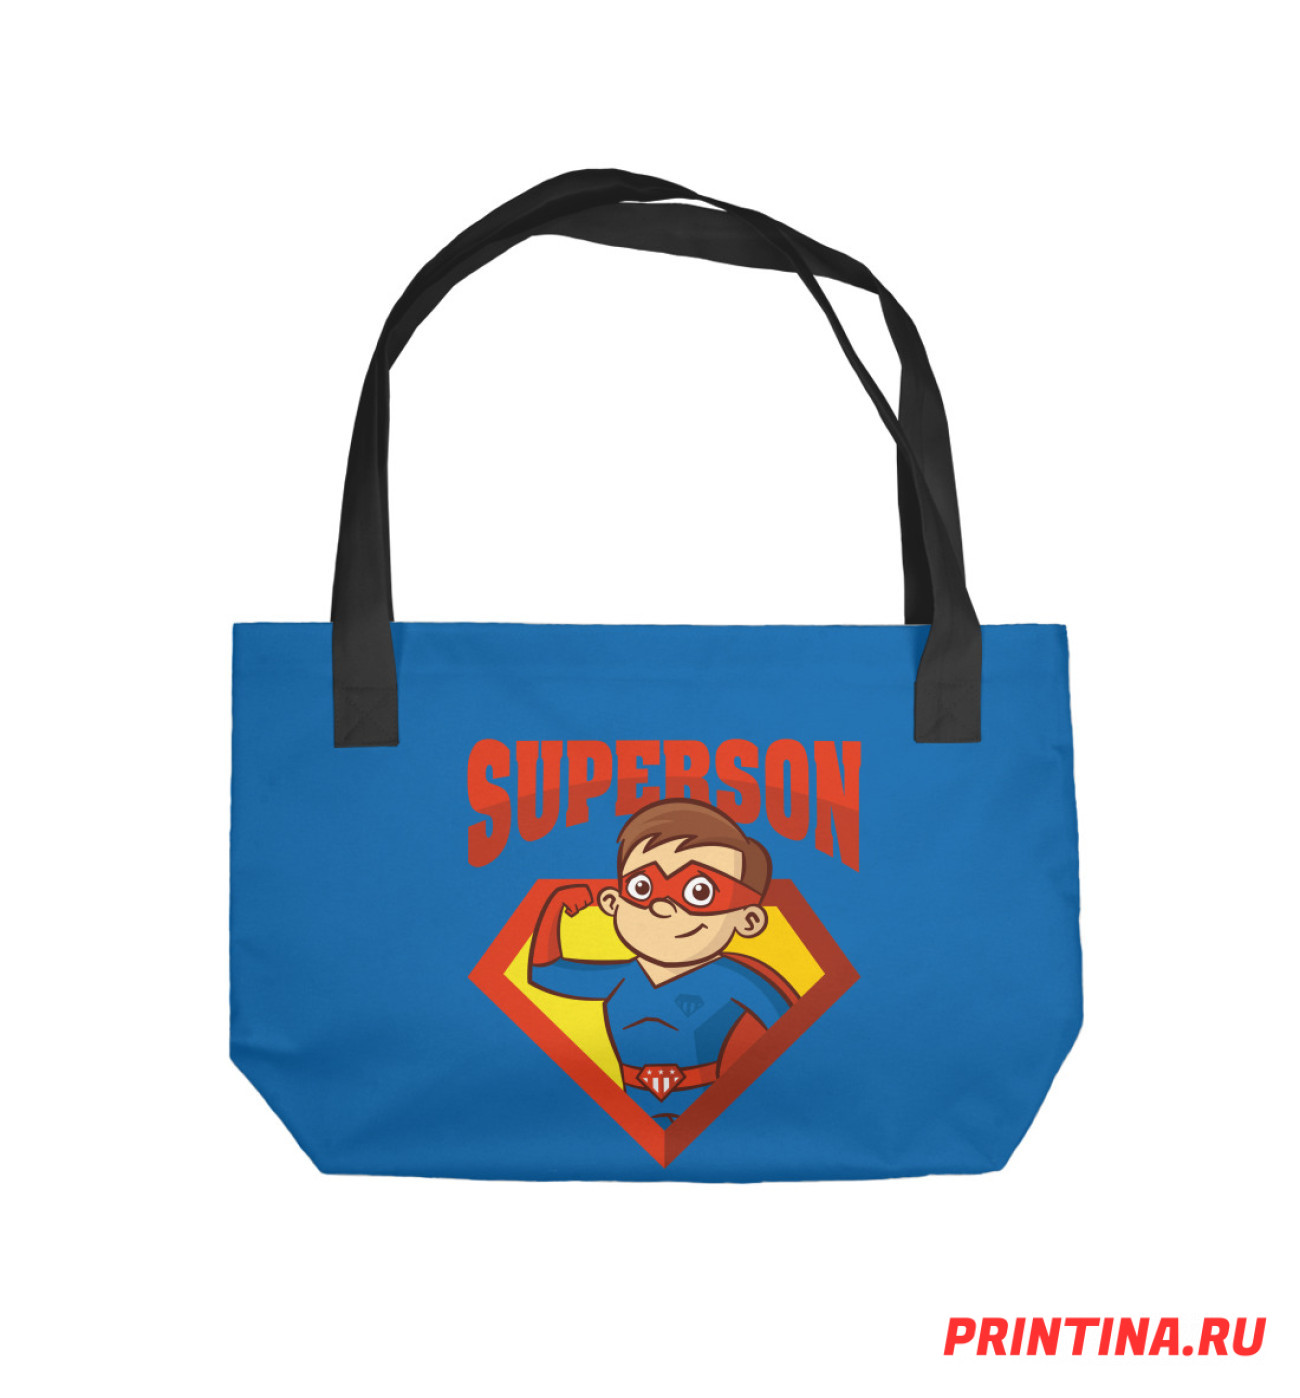 Пляжная сумка Супер сын, артикул: KMU-182540-sup